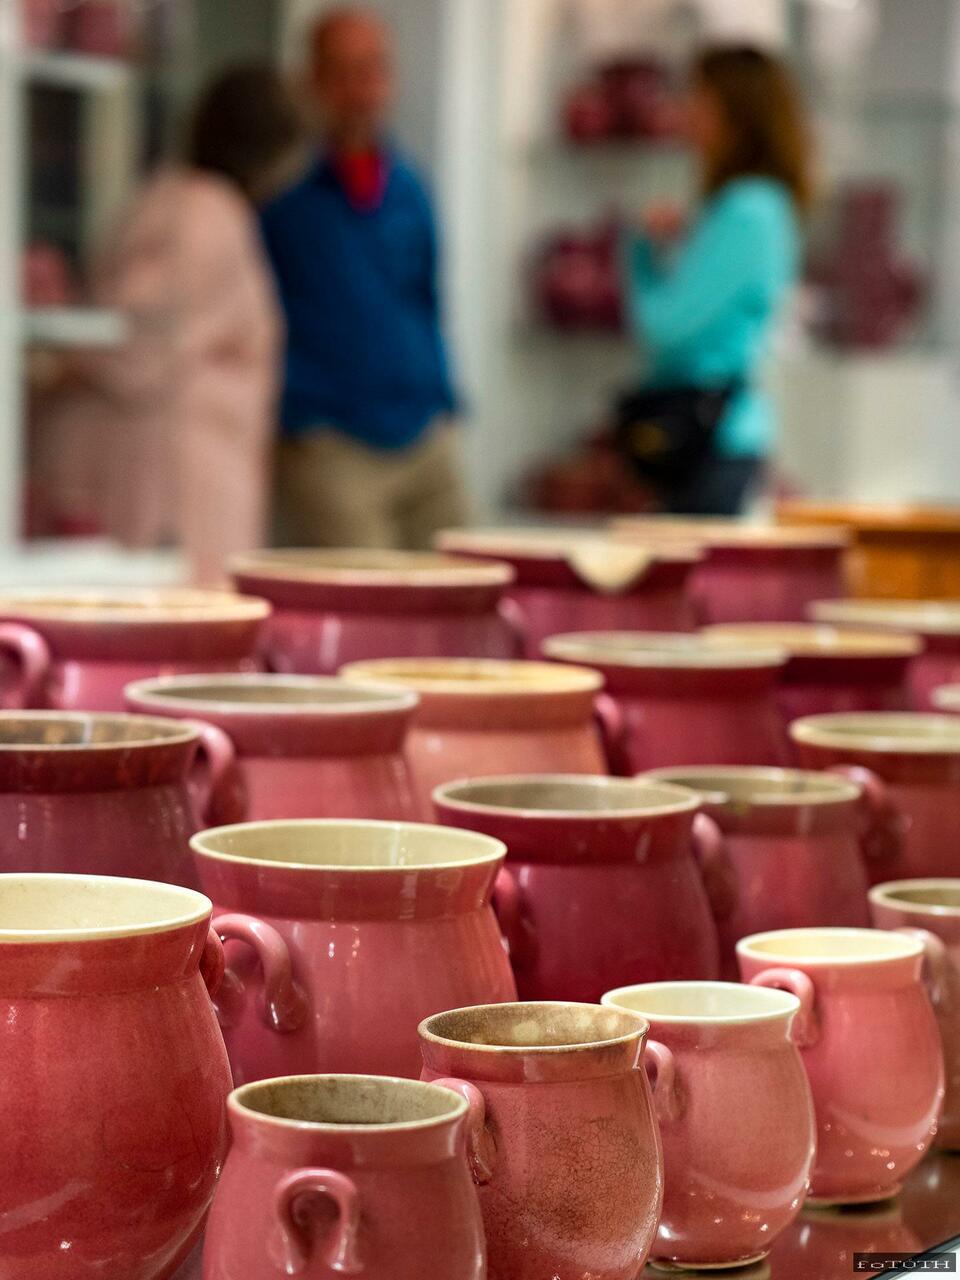 Rózsaszín mázas porcelán tárgyak a pécsi Zsolnay Negyedben. Fotó: Zsolnay Negyed Facebook 